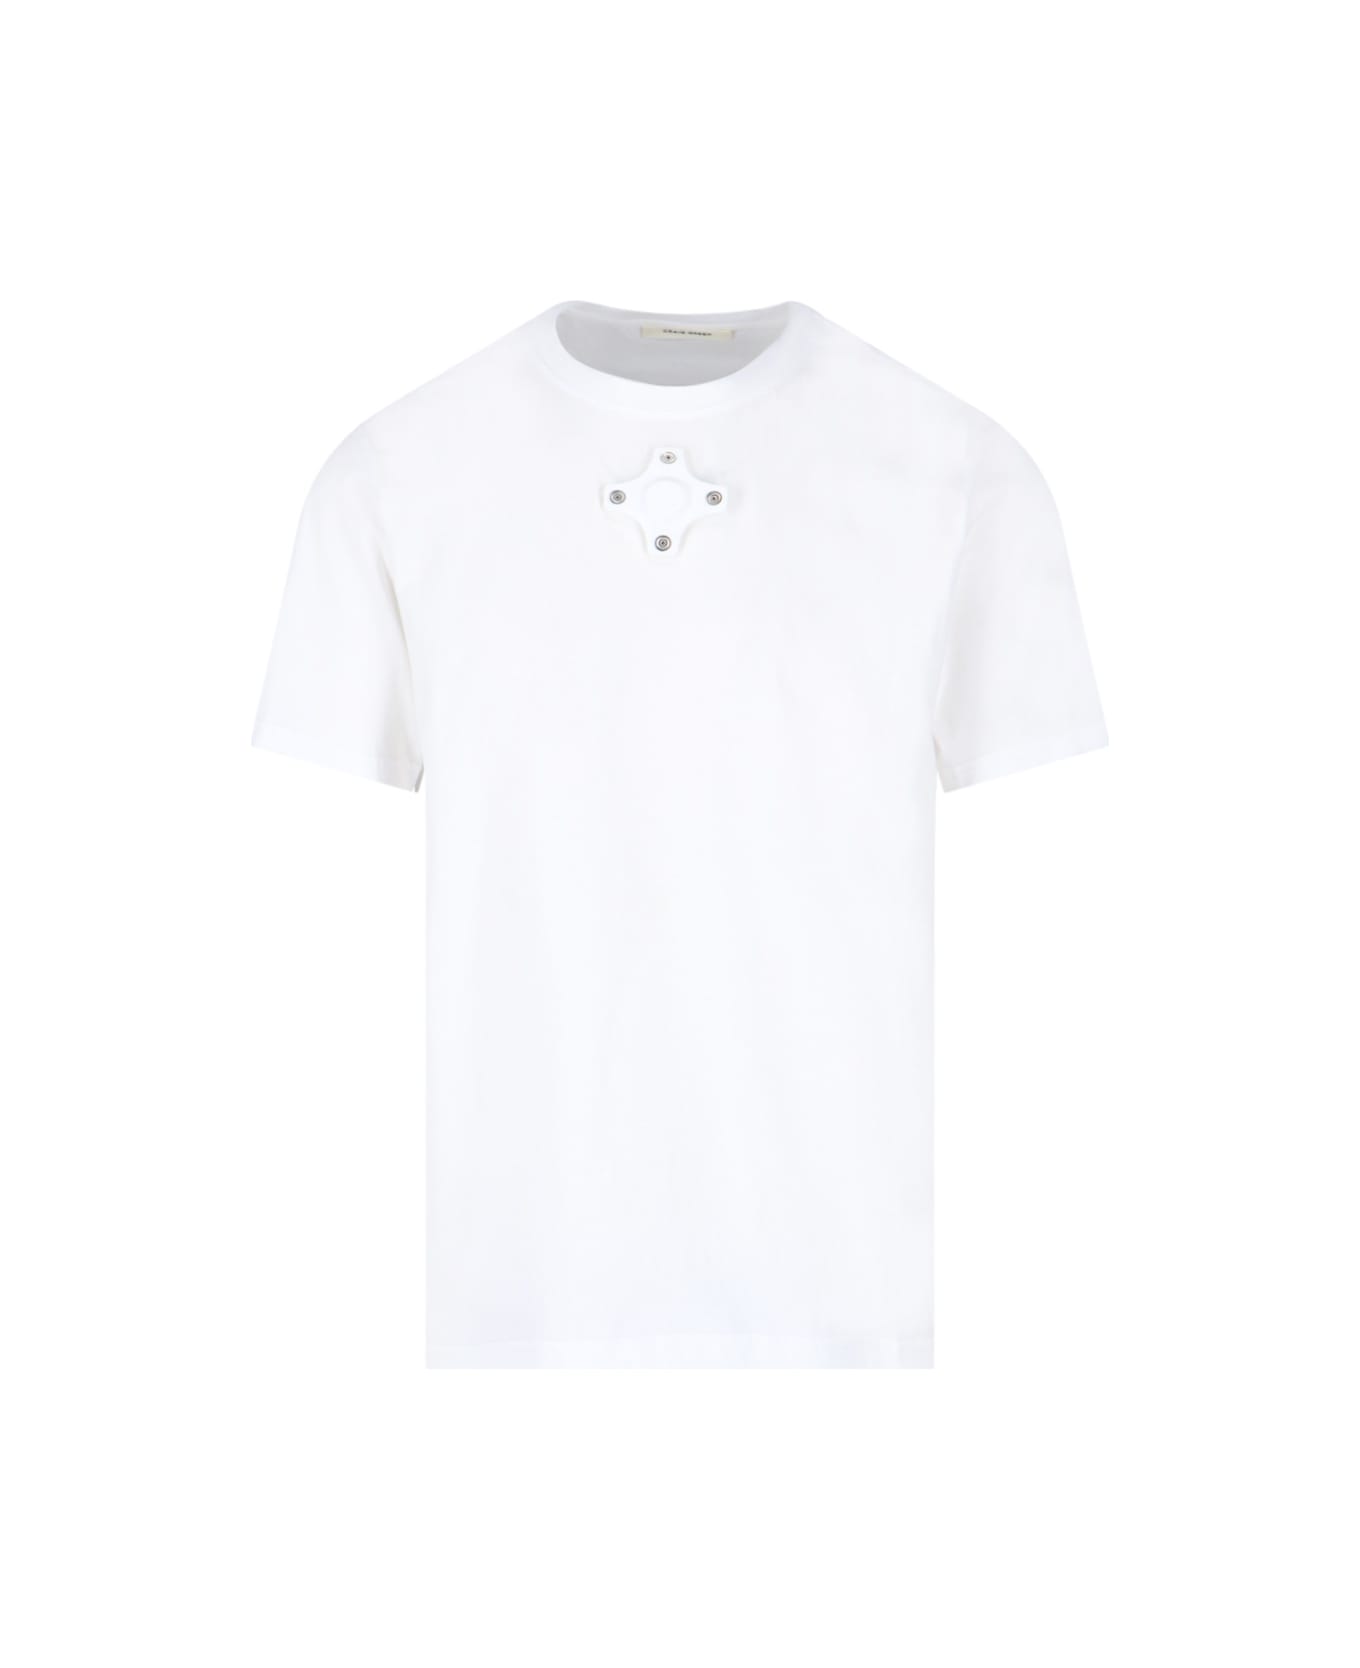 Craig Green Eyelet Detail T-shirt - White シャツ